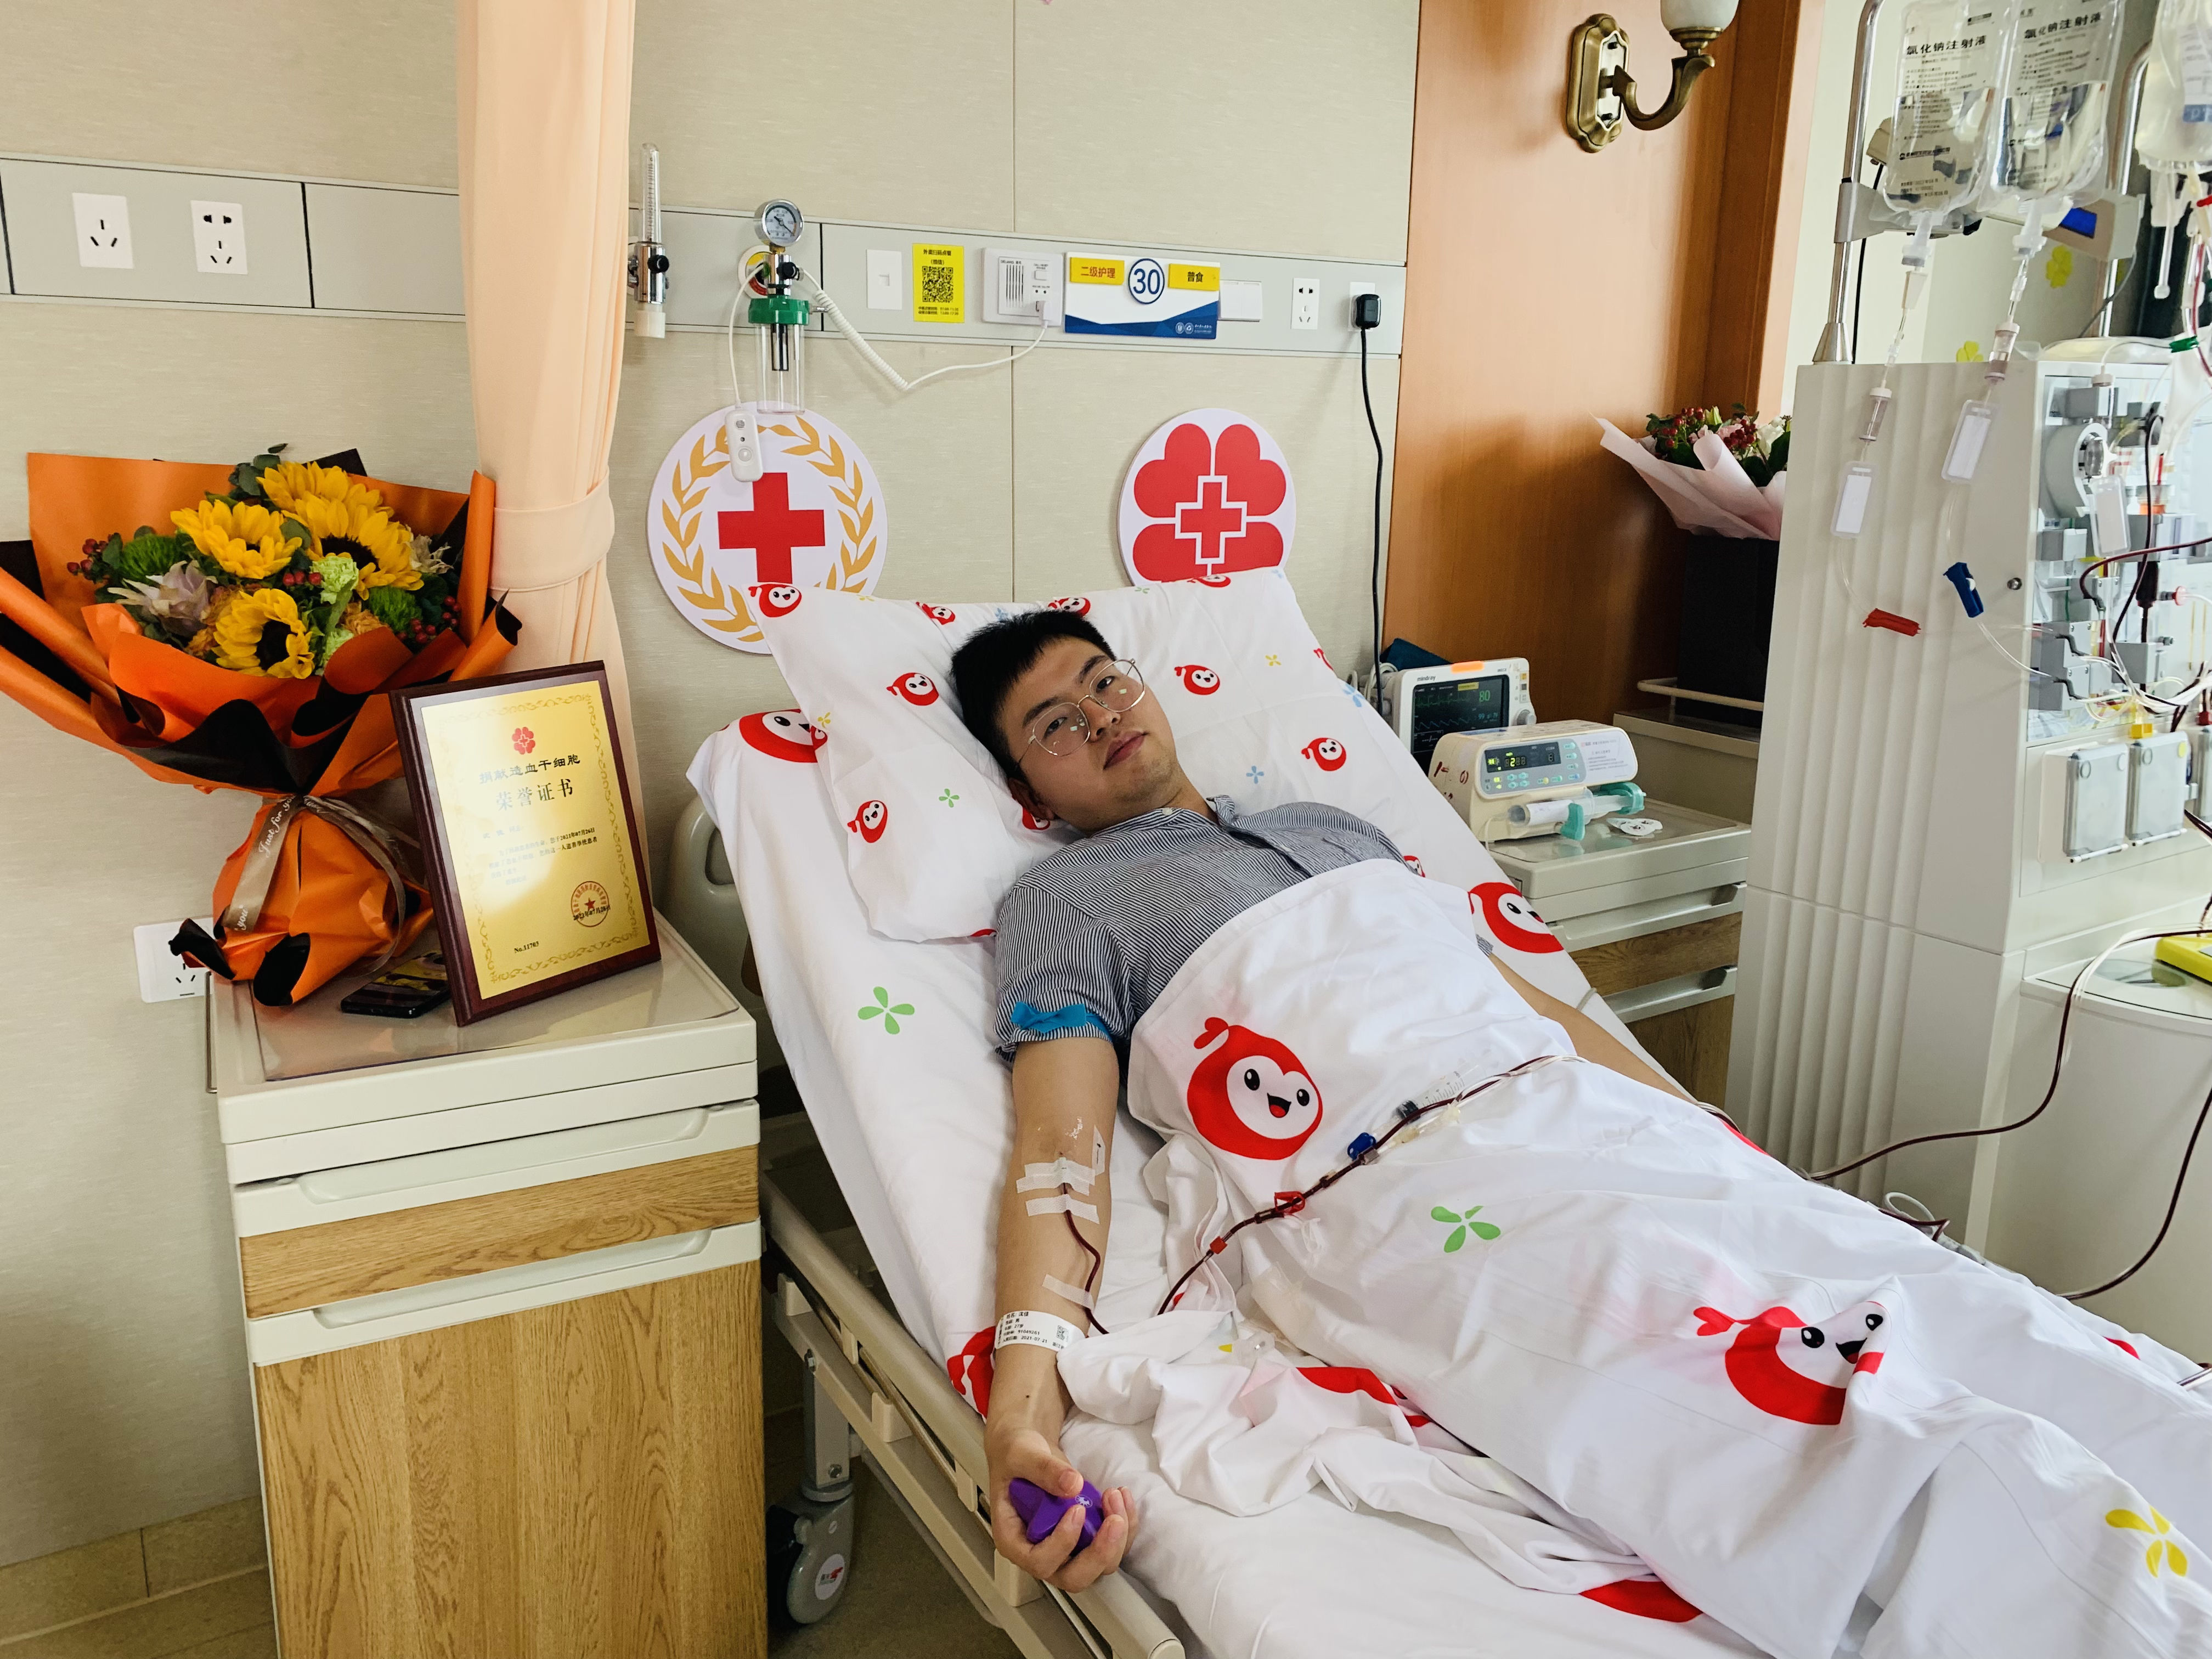 青年节|余杭“90后”小伙成功捐献造血干细胞 “生命的种子”冲破风雨带去希望